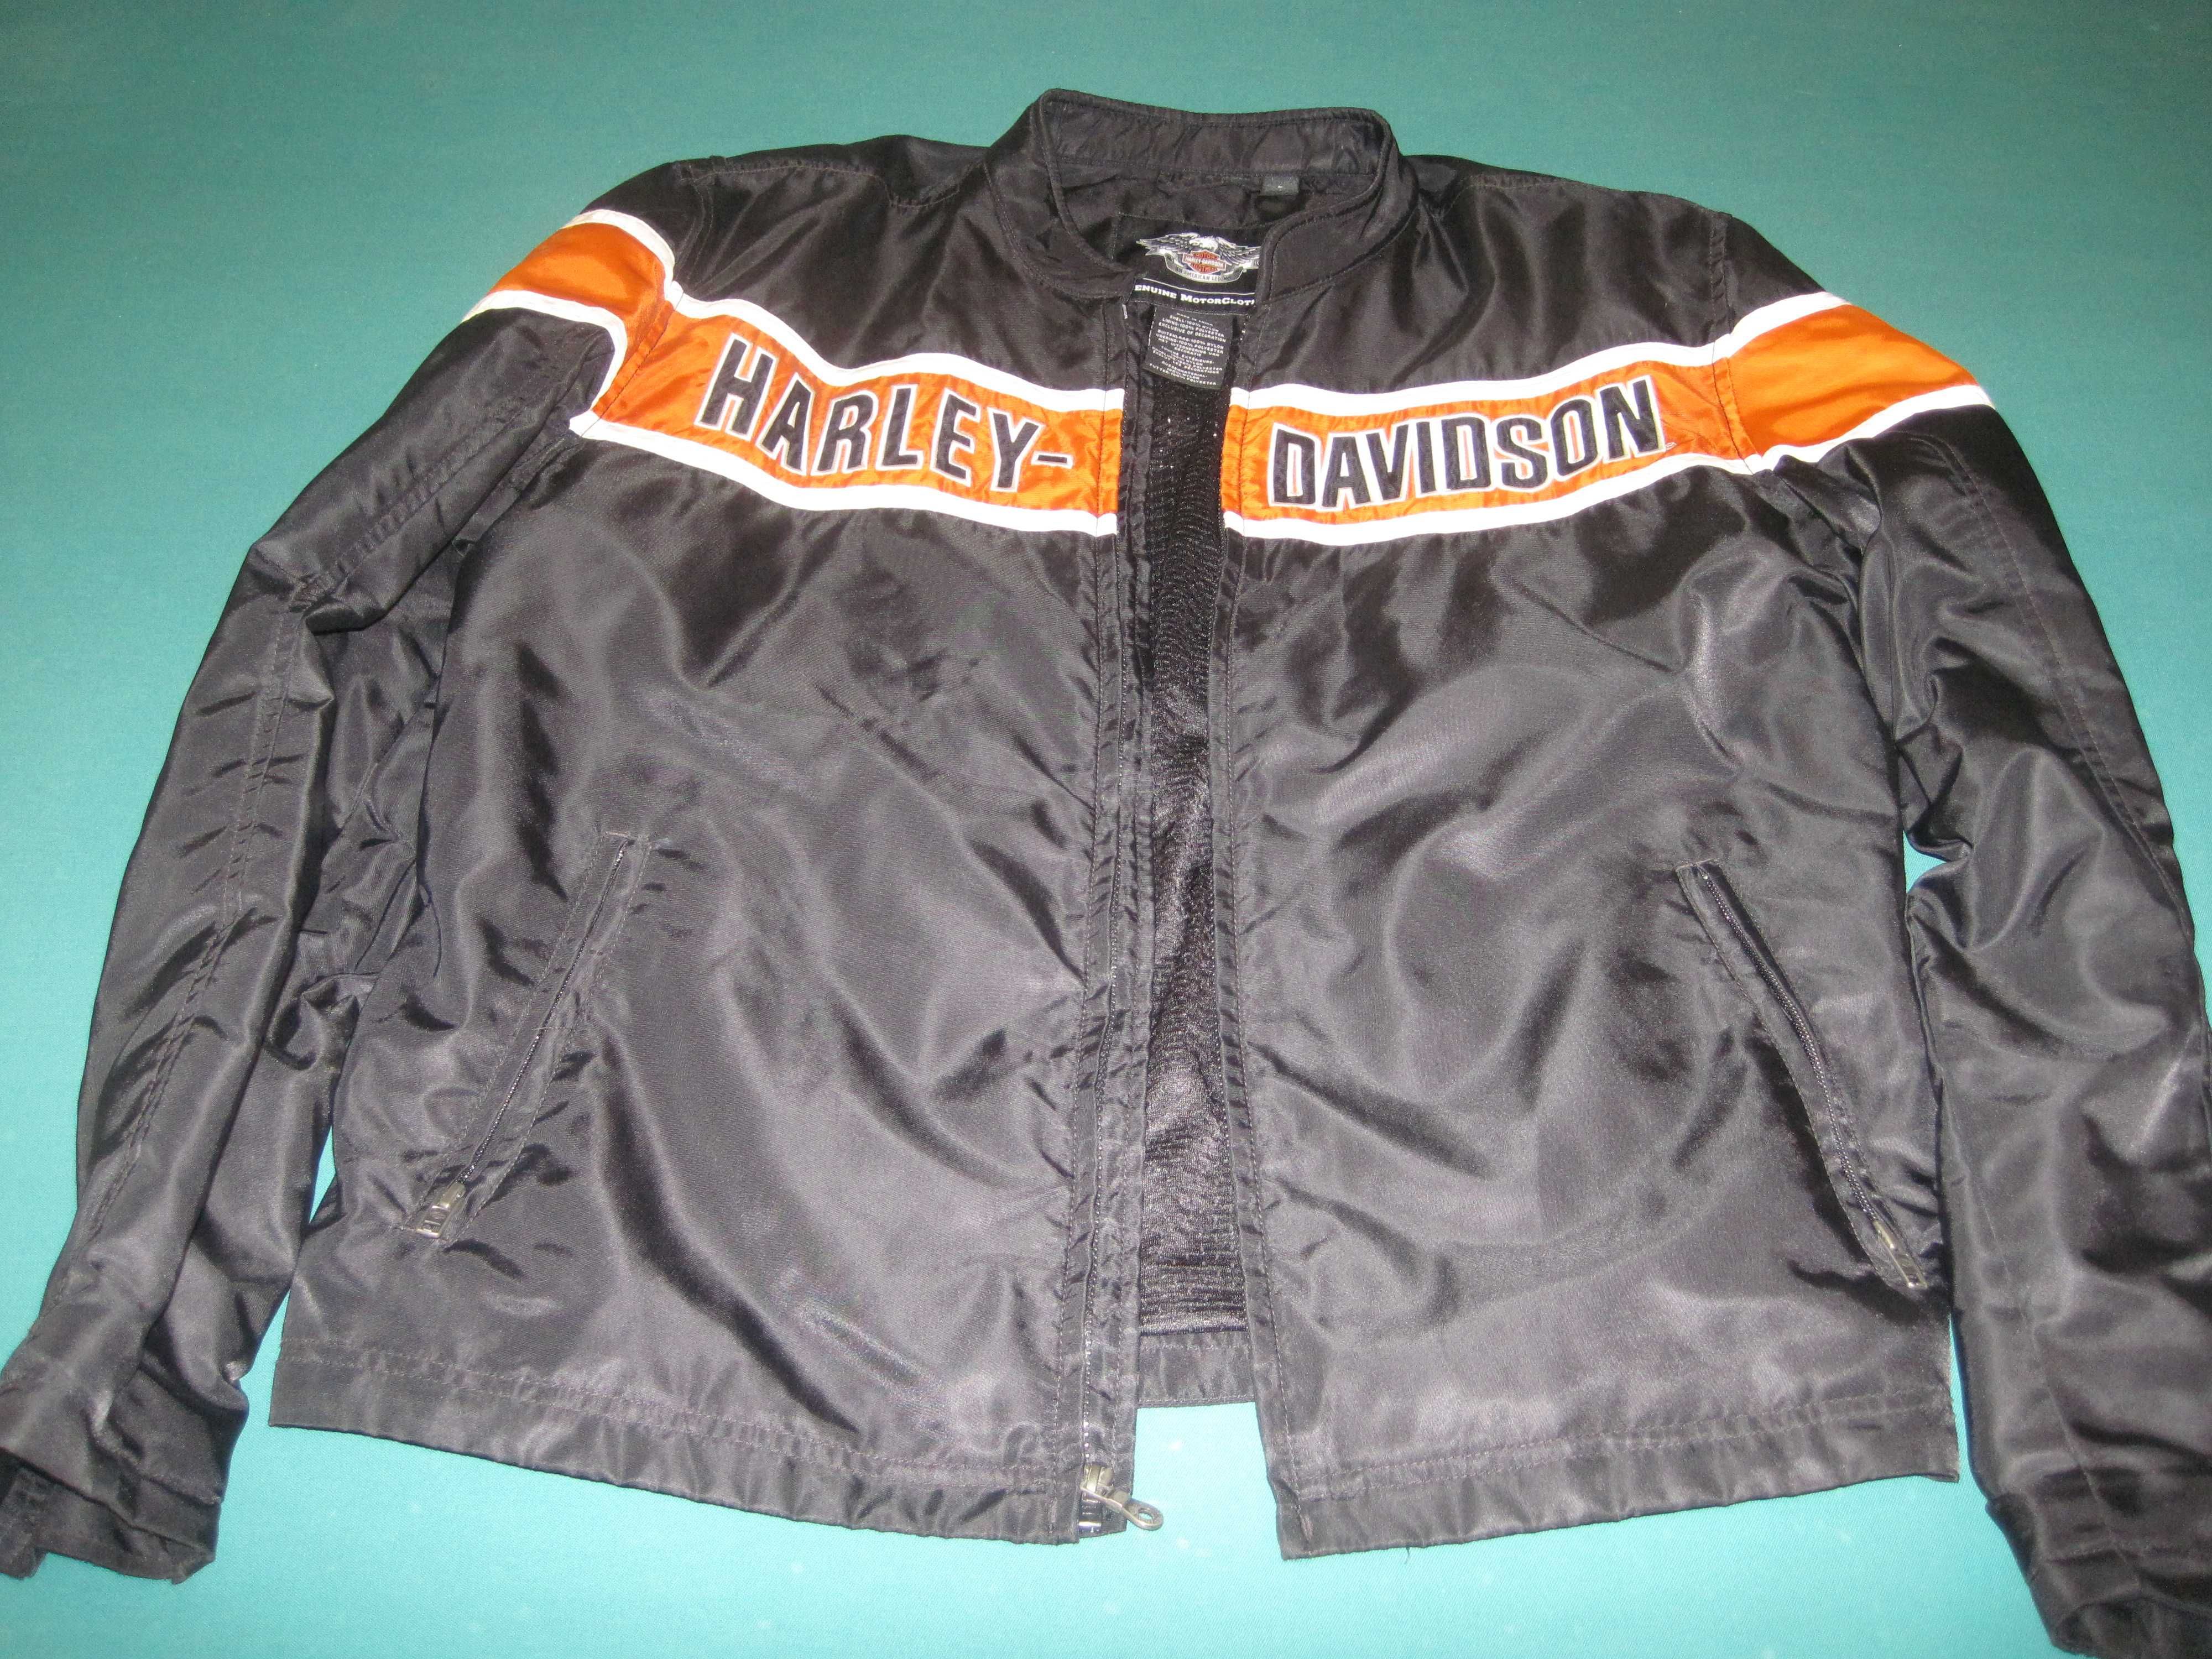 Blusões Originais Harley Davidson usados em excelente estado.